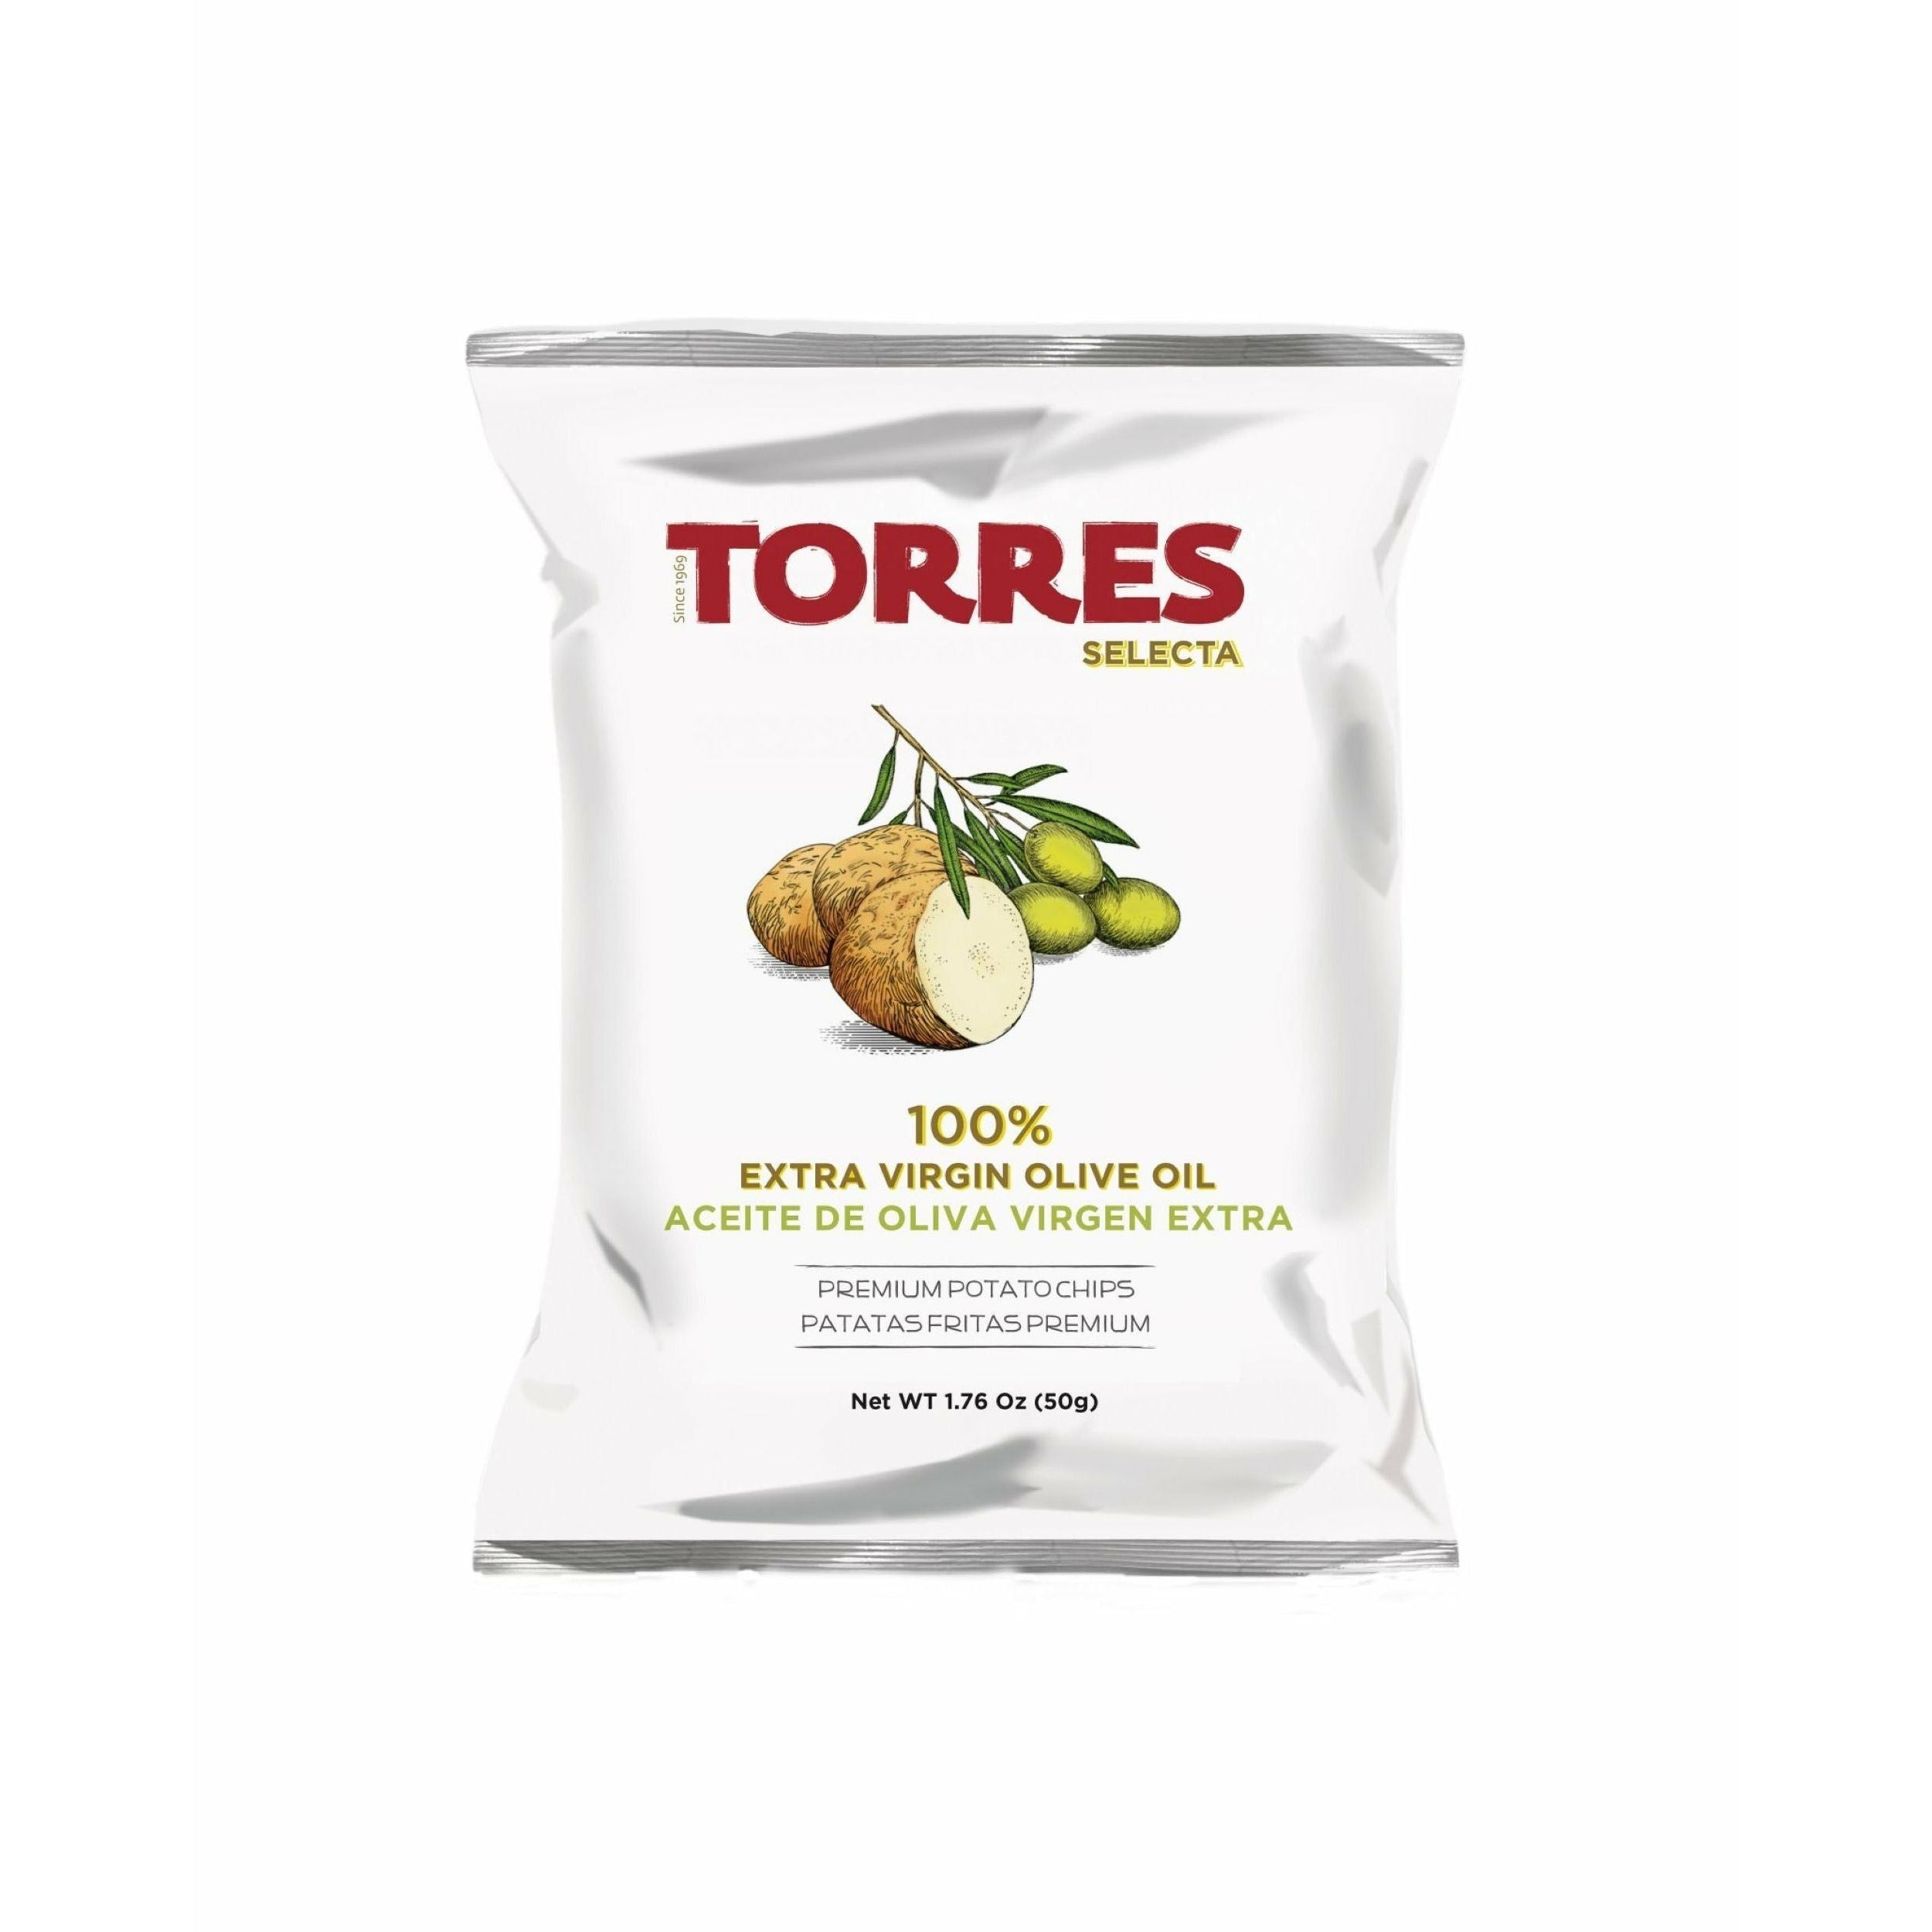 Torres SELECTA OLIVE OLIVE CHIPS, 50G